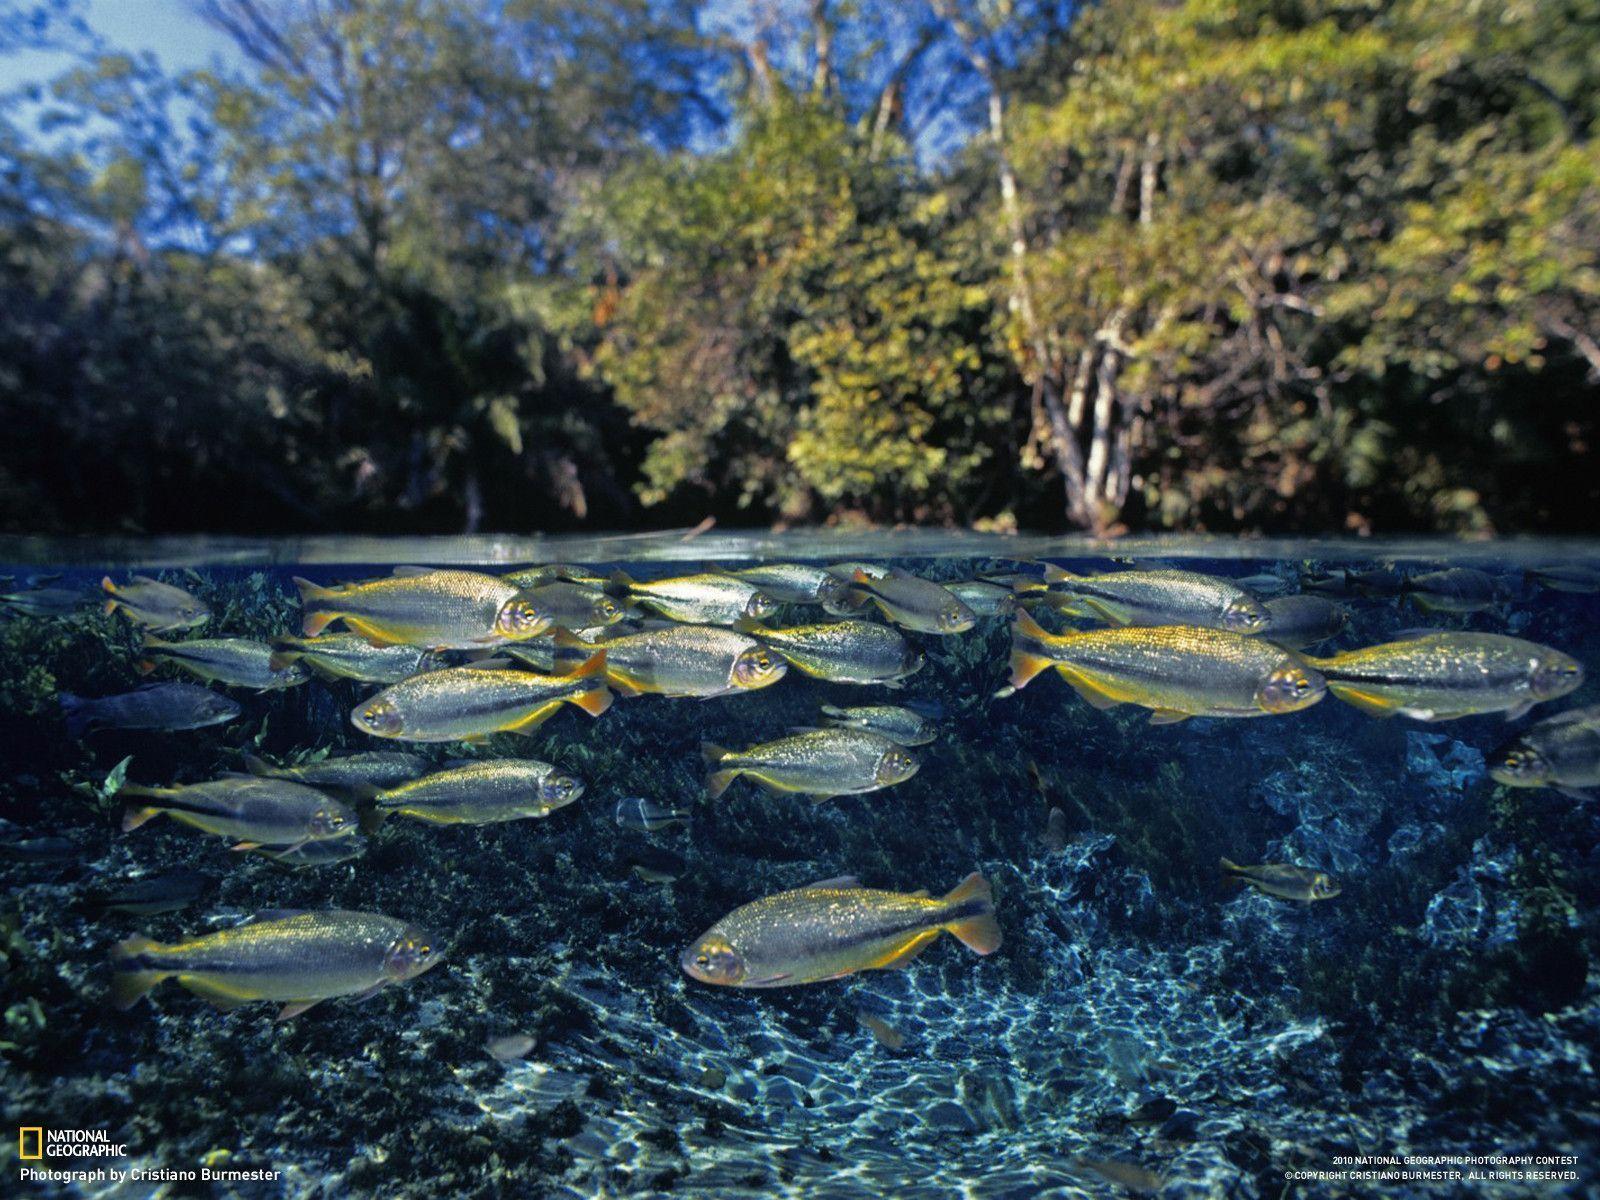 Piraputanga Fish, Brazil